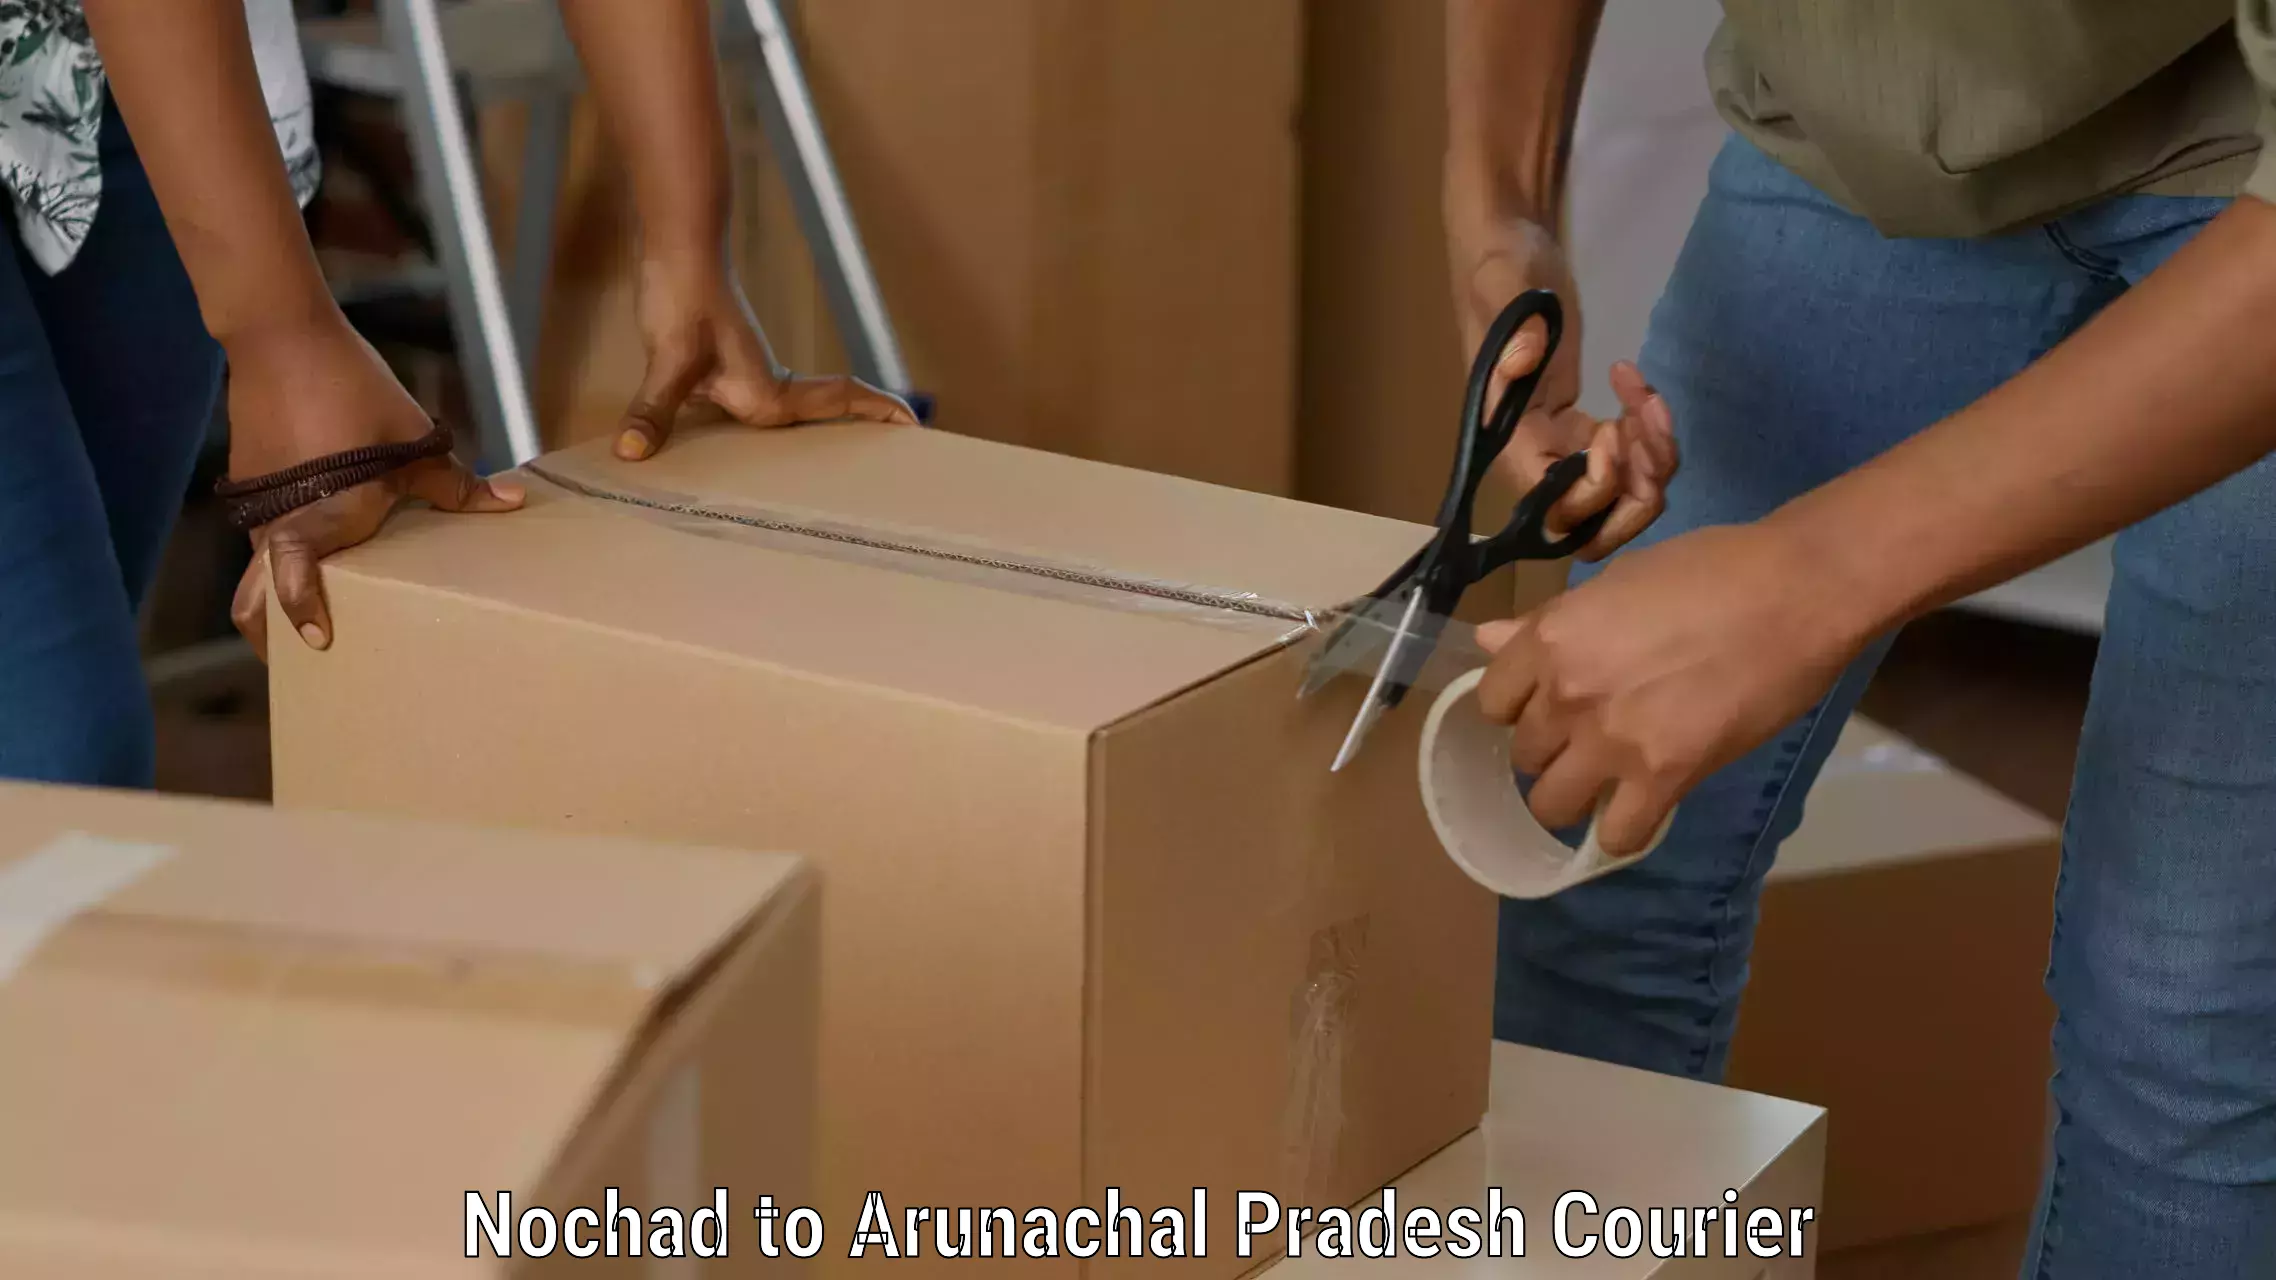 Lightweight parcel options Nochad to Arunachal Pradesh